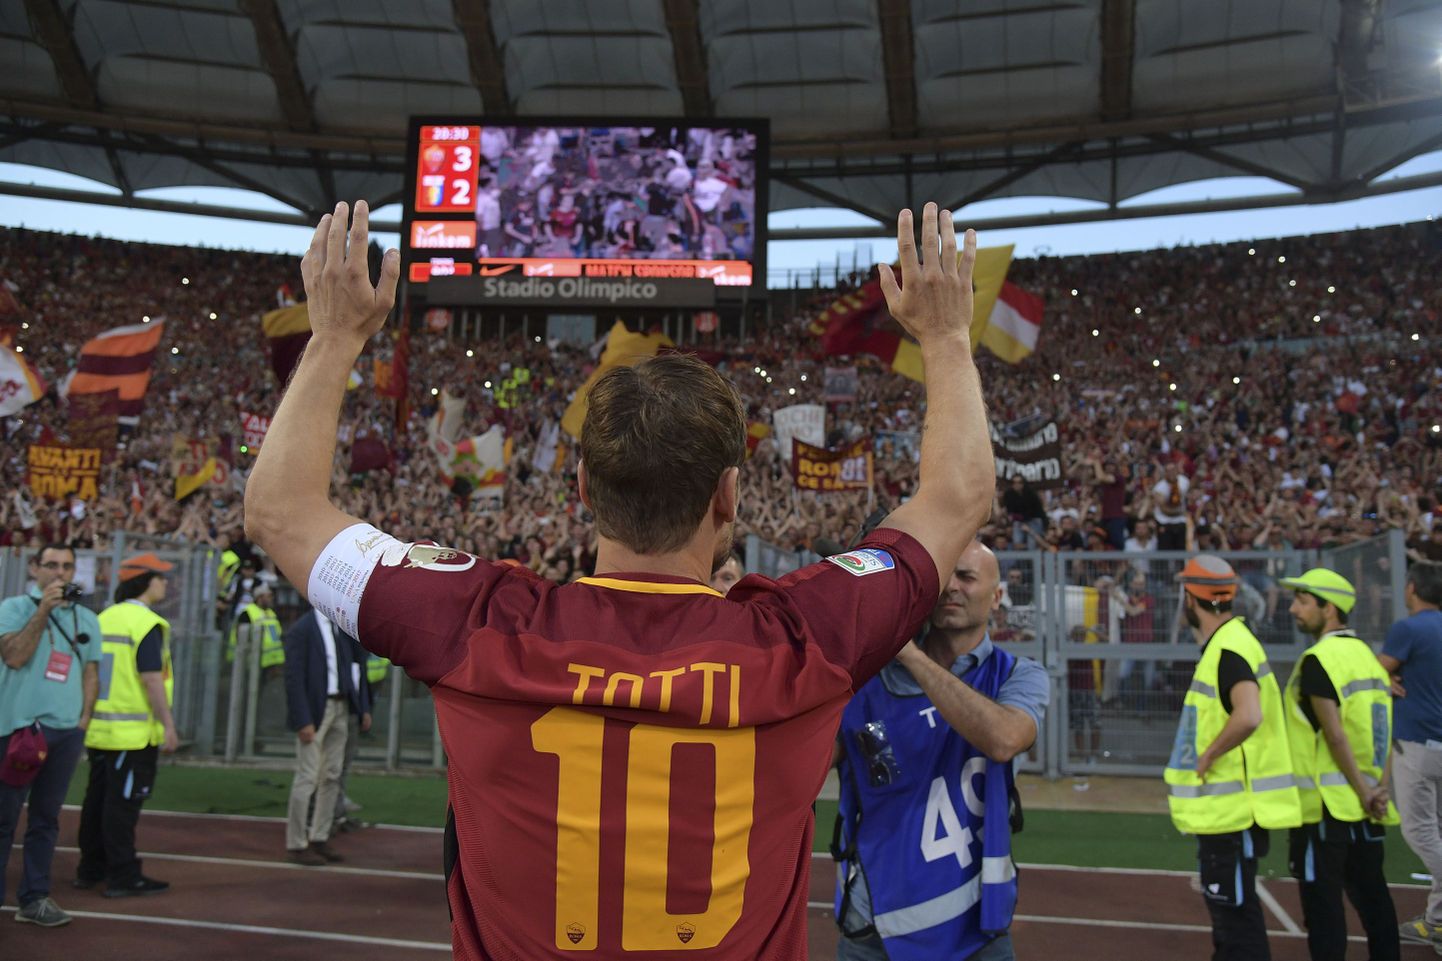 Francesco Totti pani oma karjäärile punkti.